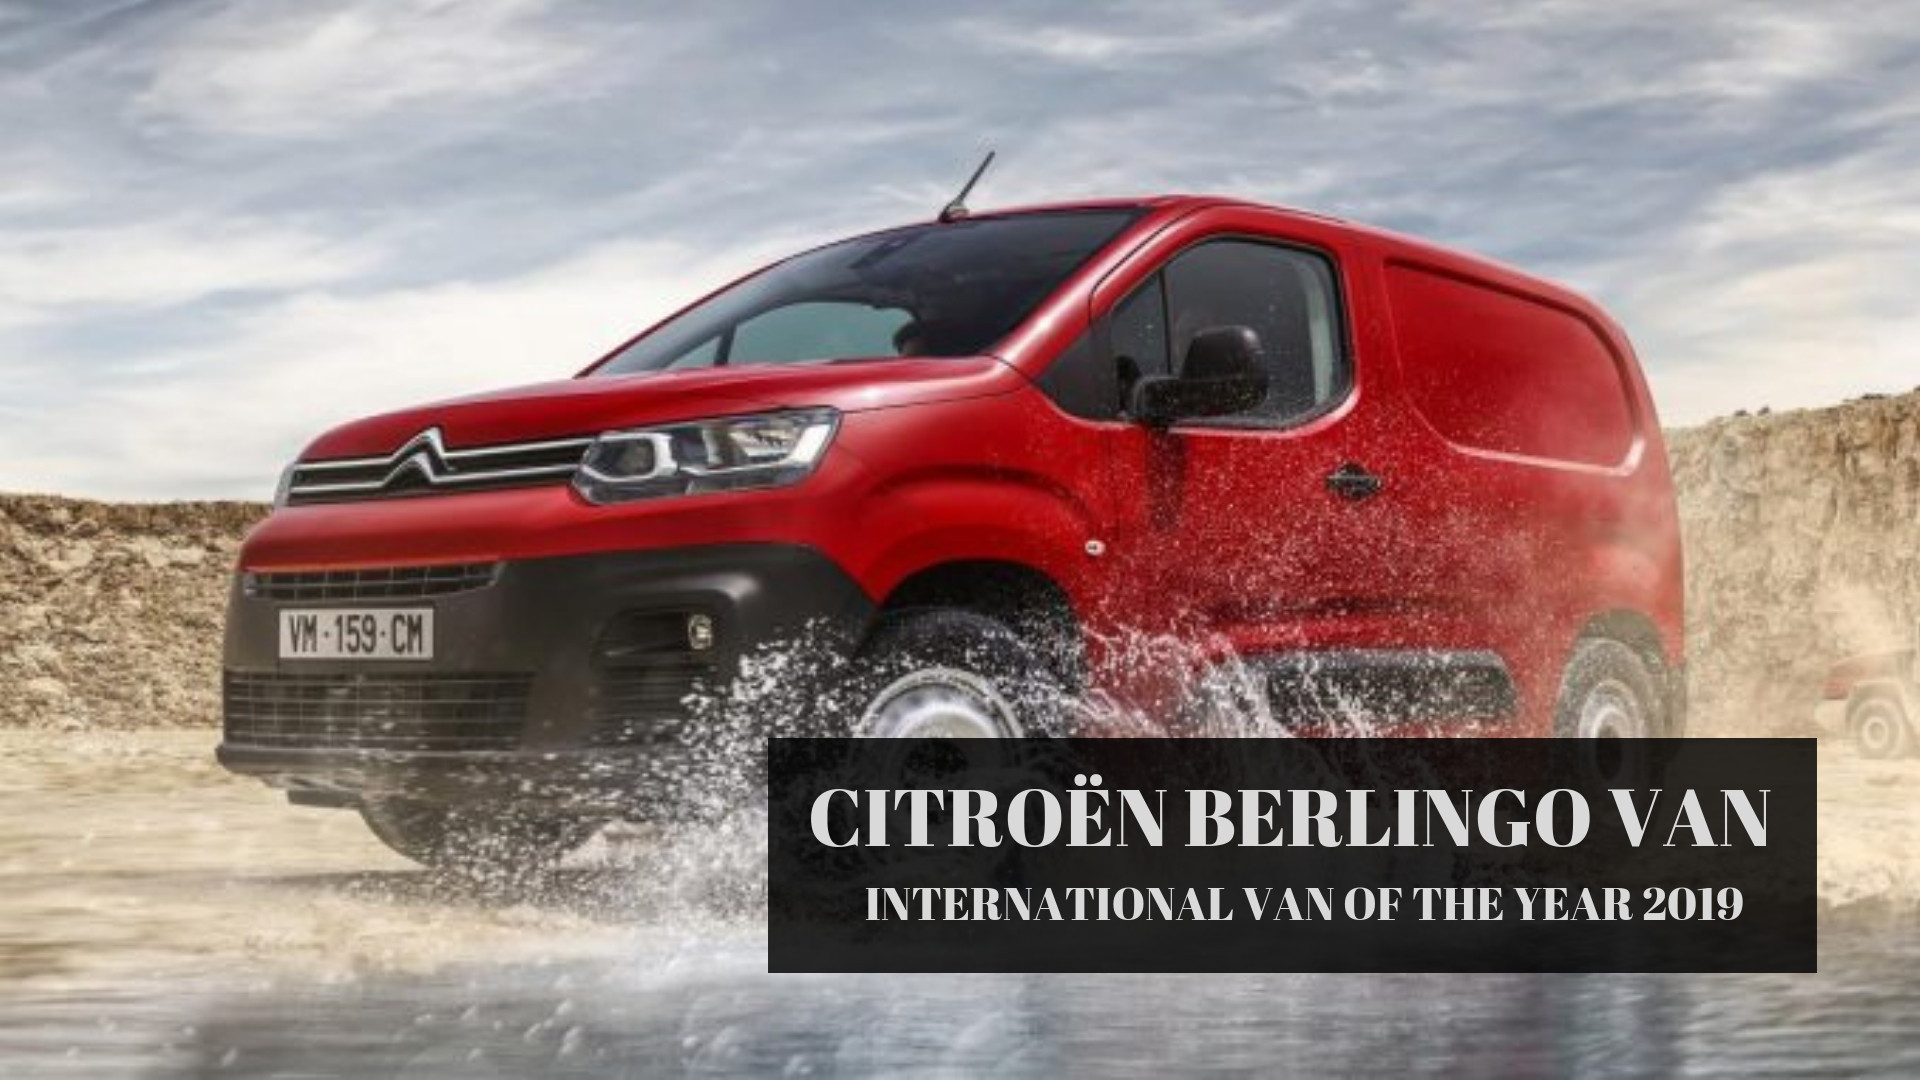 Citroën Berlingo Van eletto "International Van of the Year 2019"